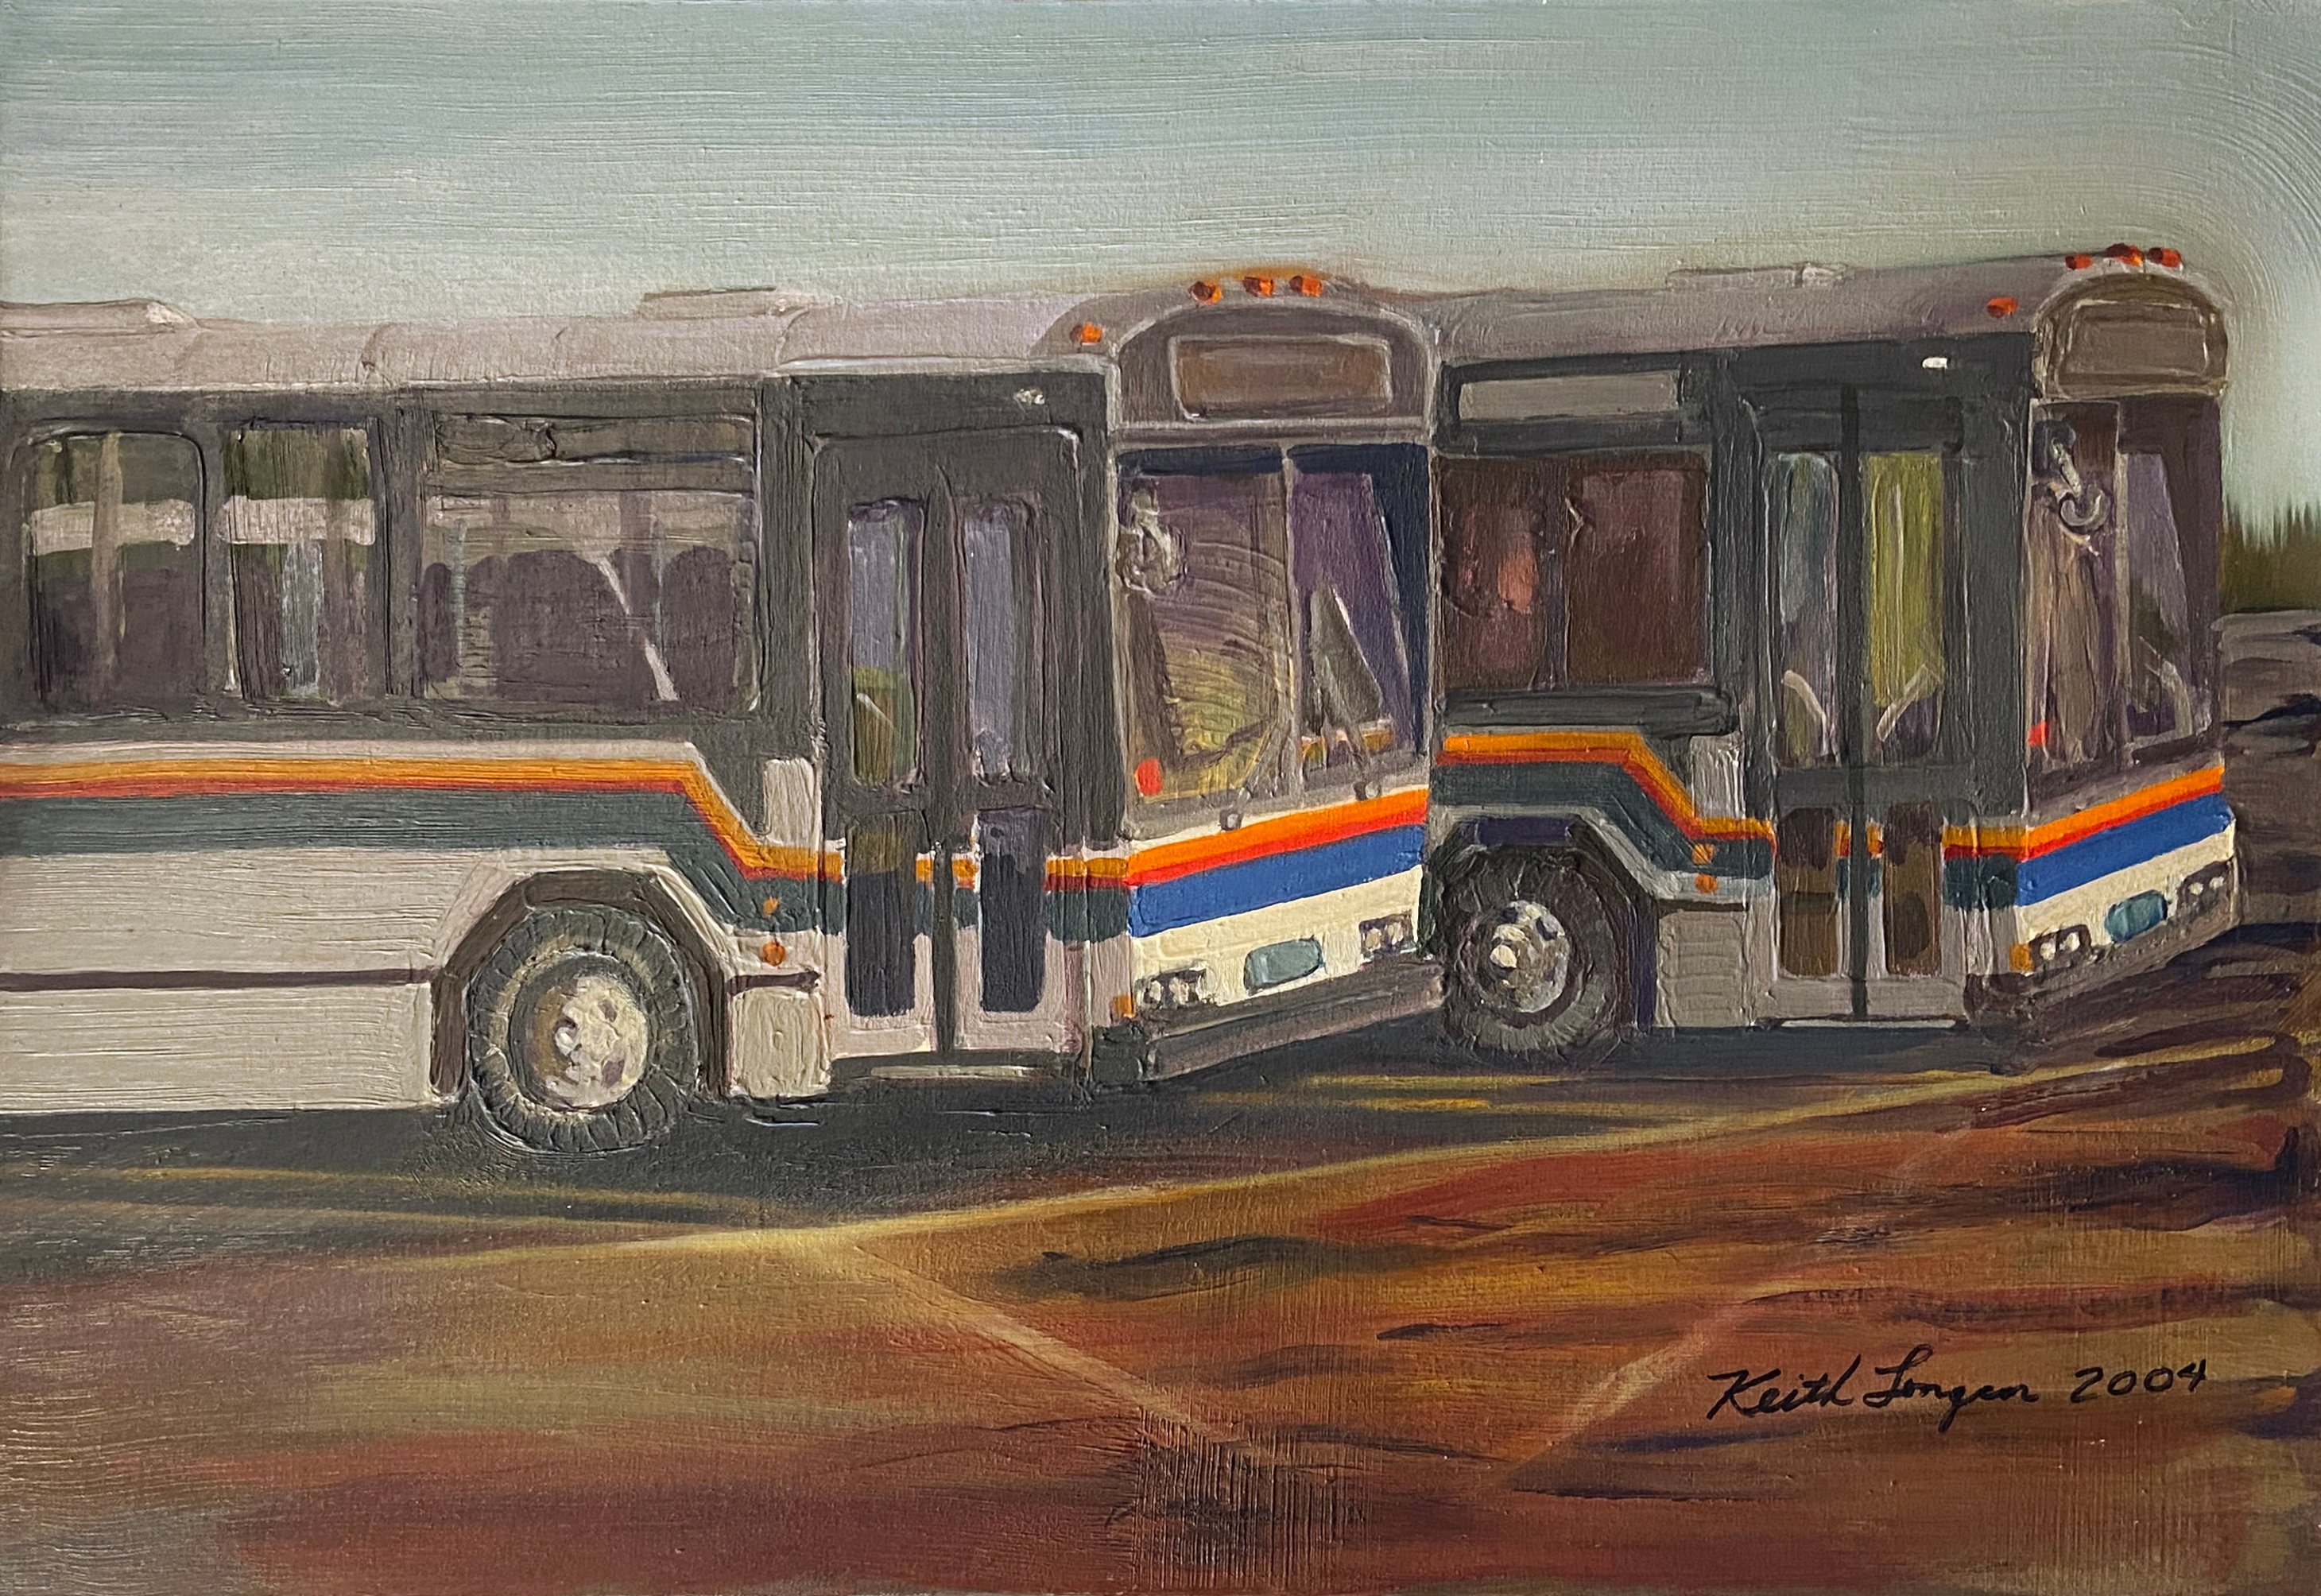 Metro Buses by Keith Longcor, 2004~P77611385